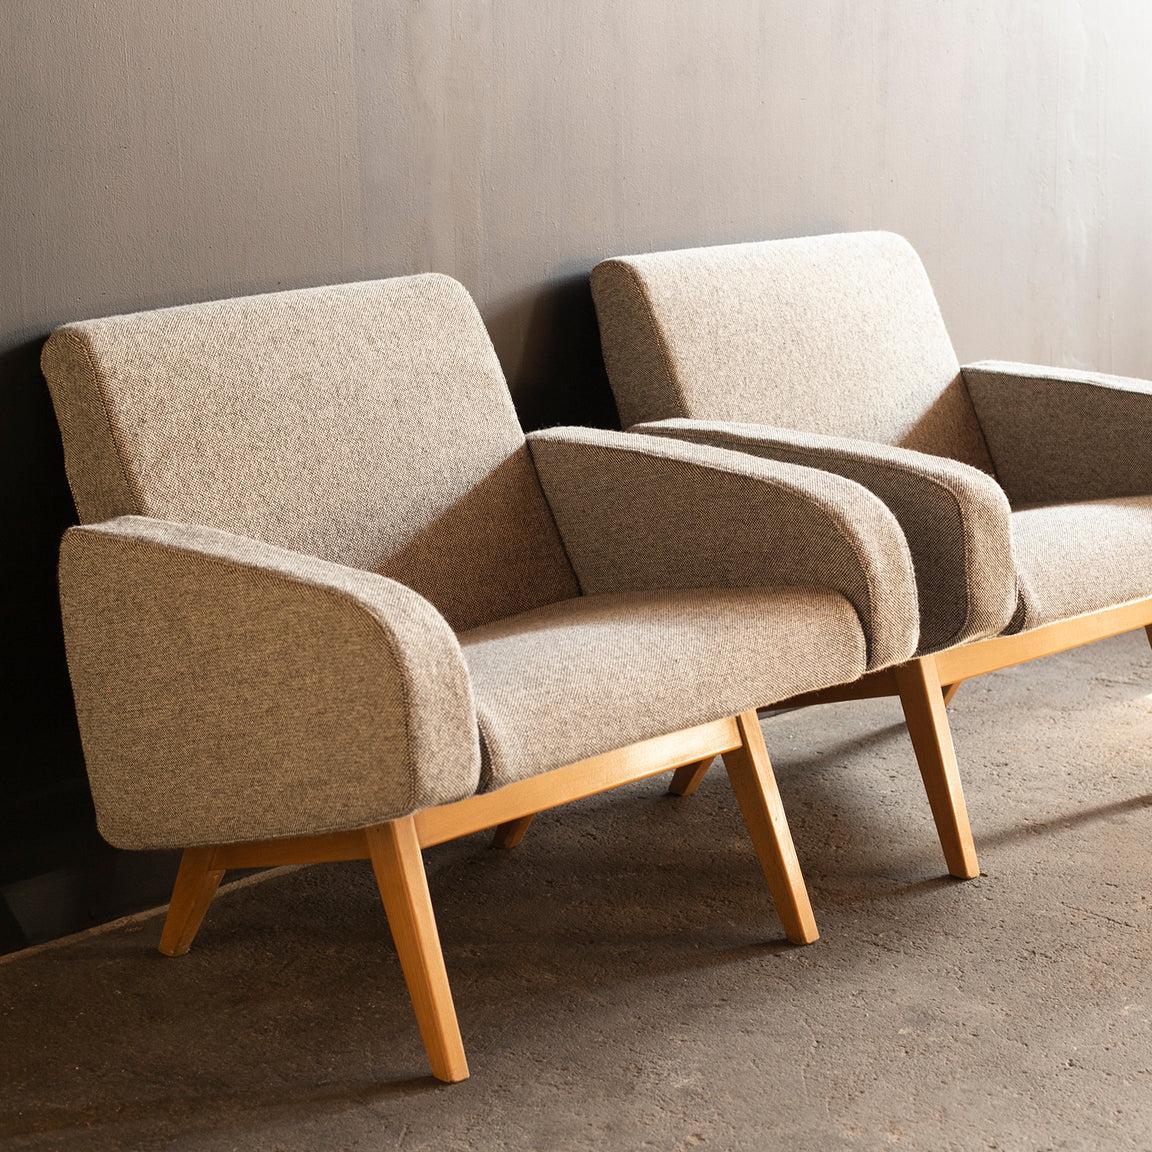 Paire de deux fauteuils conçus par Joseph-André Motte pour Steiner. Modèle 740.
Il a reçu le prix René Gabriel au Salon des Arts Ménagers pour le Fauteuil 740 en 1957.
La paire est très rare modèle que le bois de hêtre est utilisé pour les